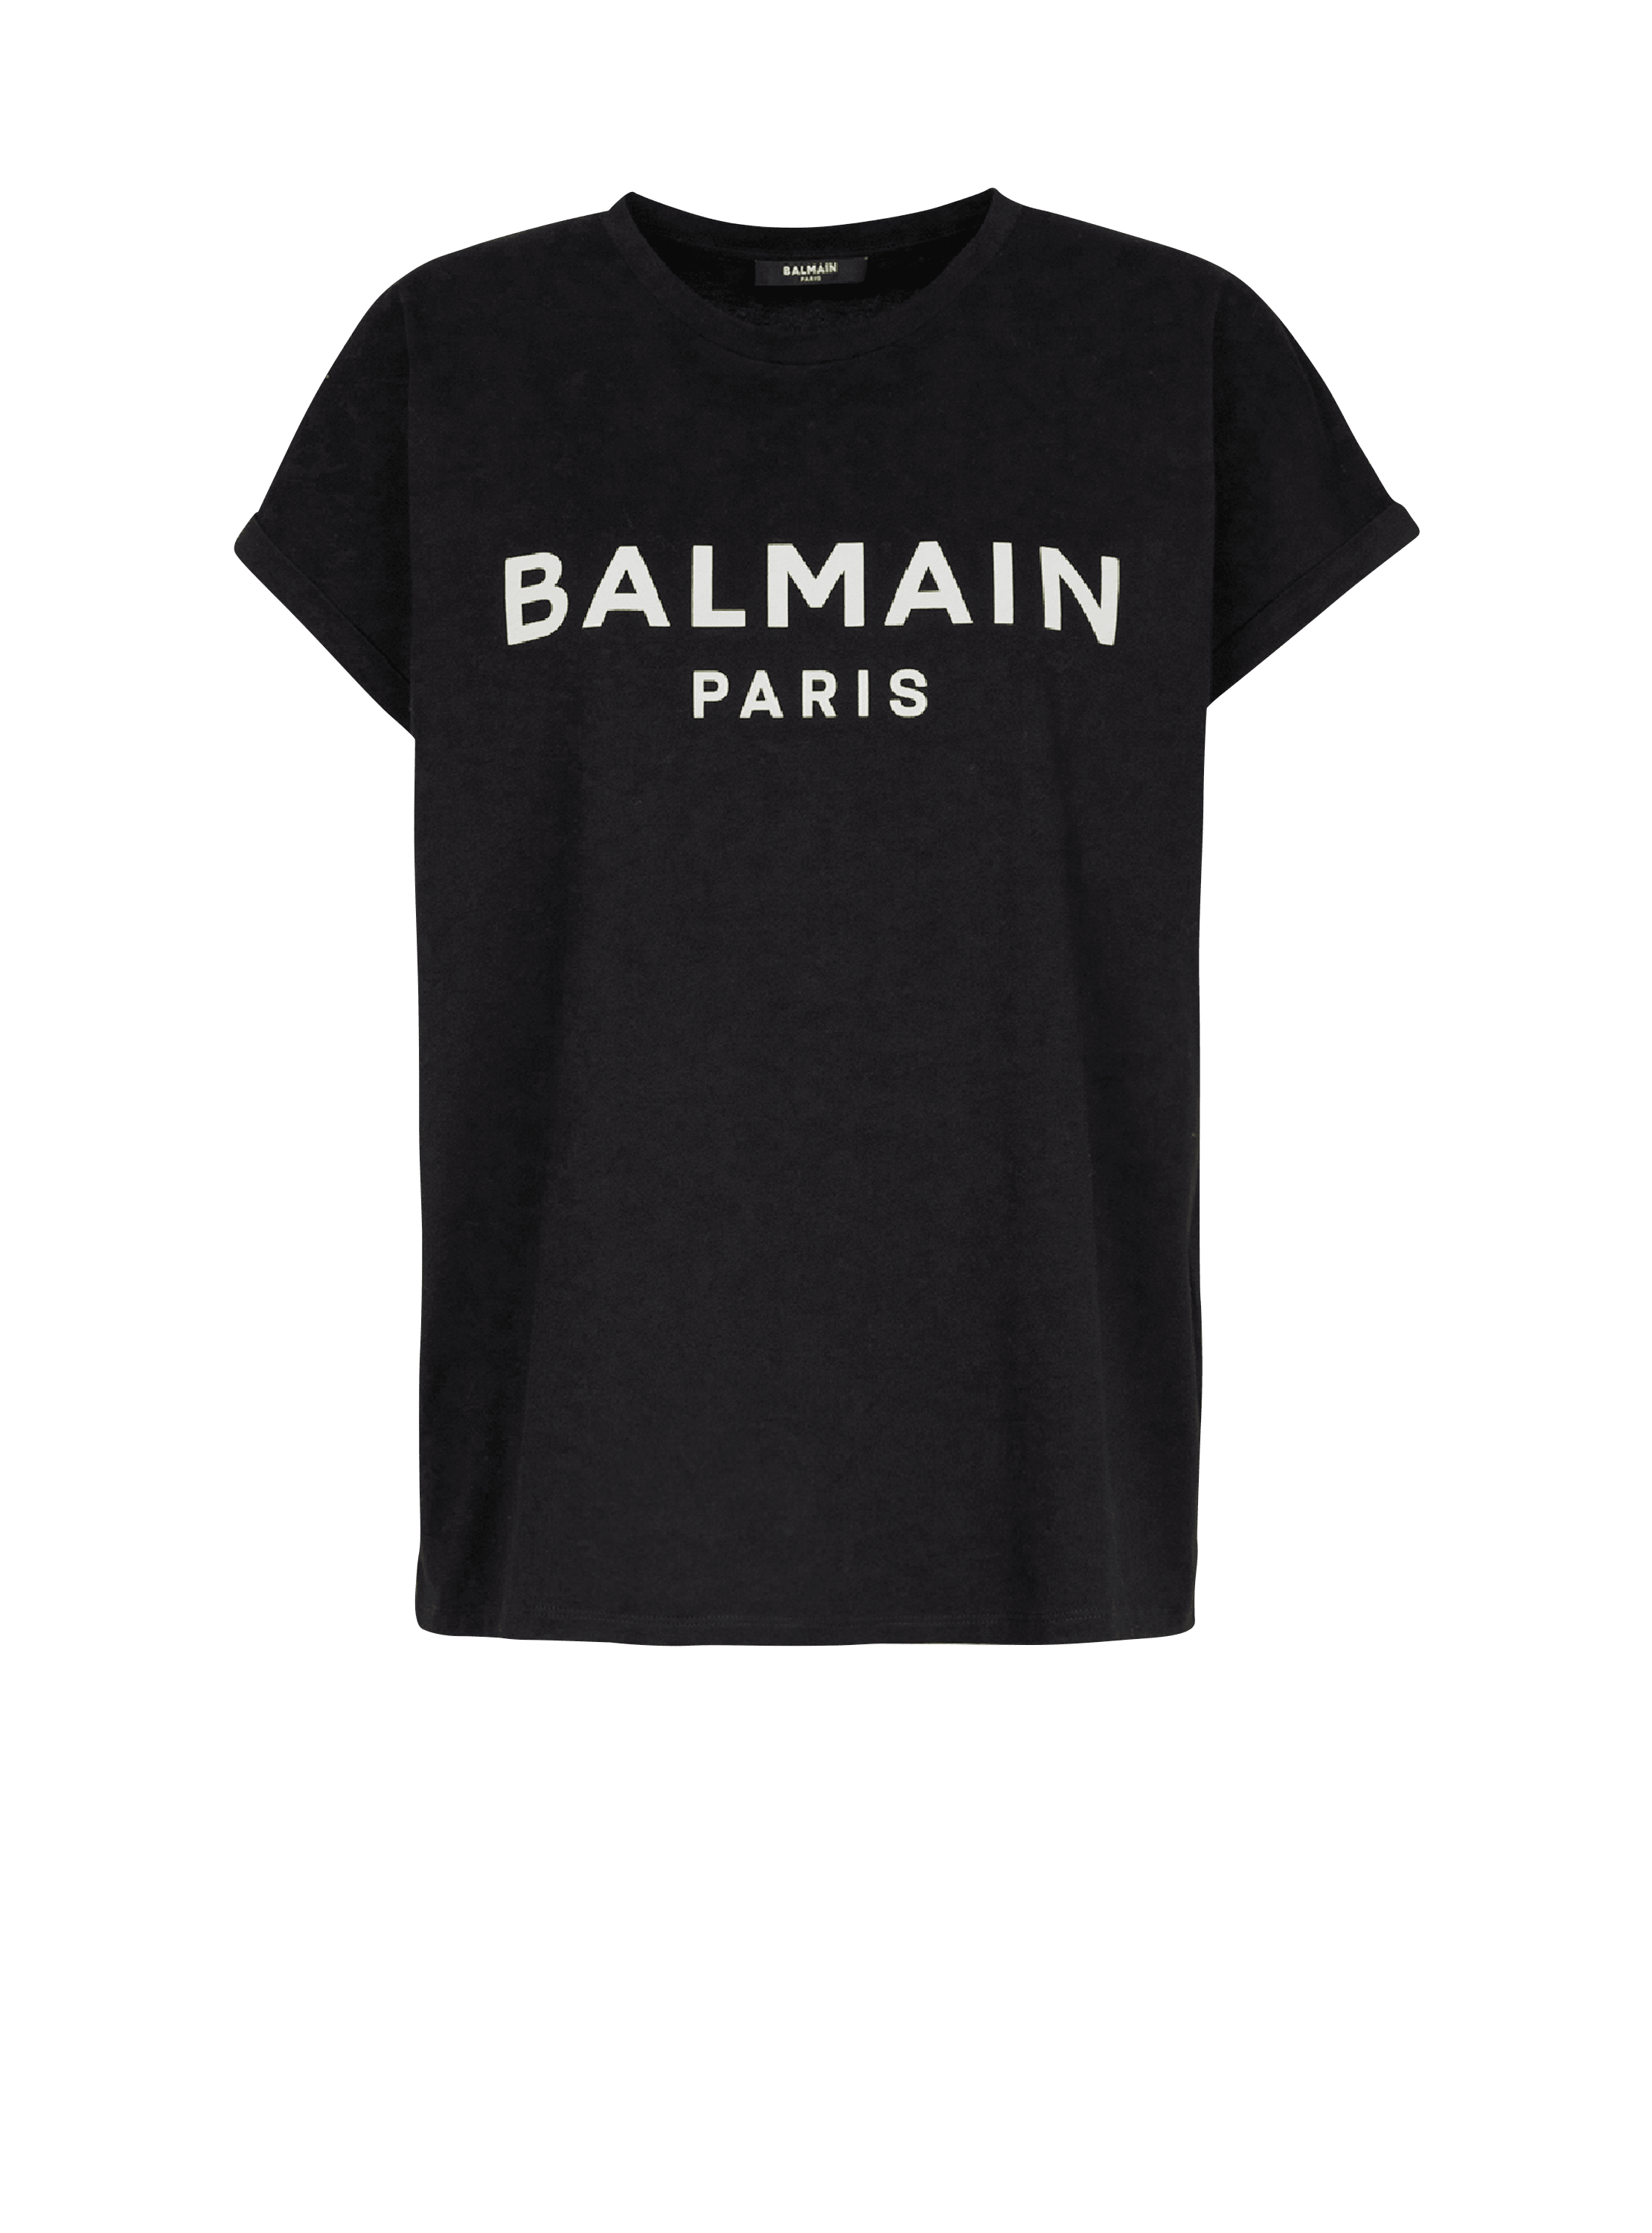 화이트 Balmain 로고 프린트 디테일 에코 디자인 코튼 티셔츠